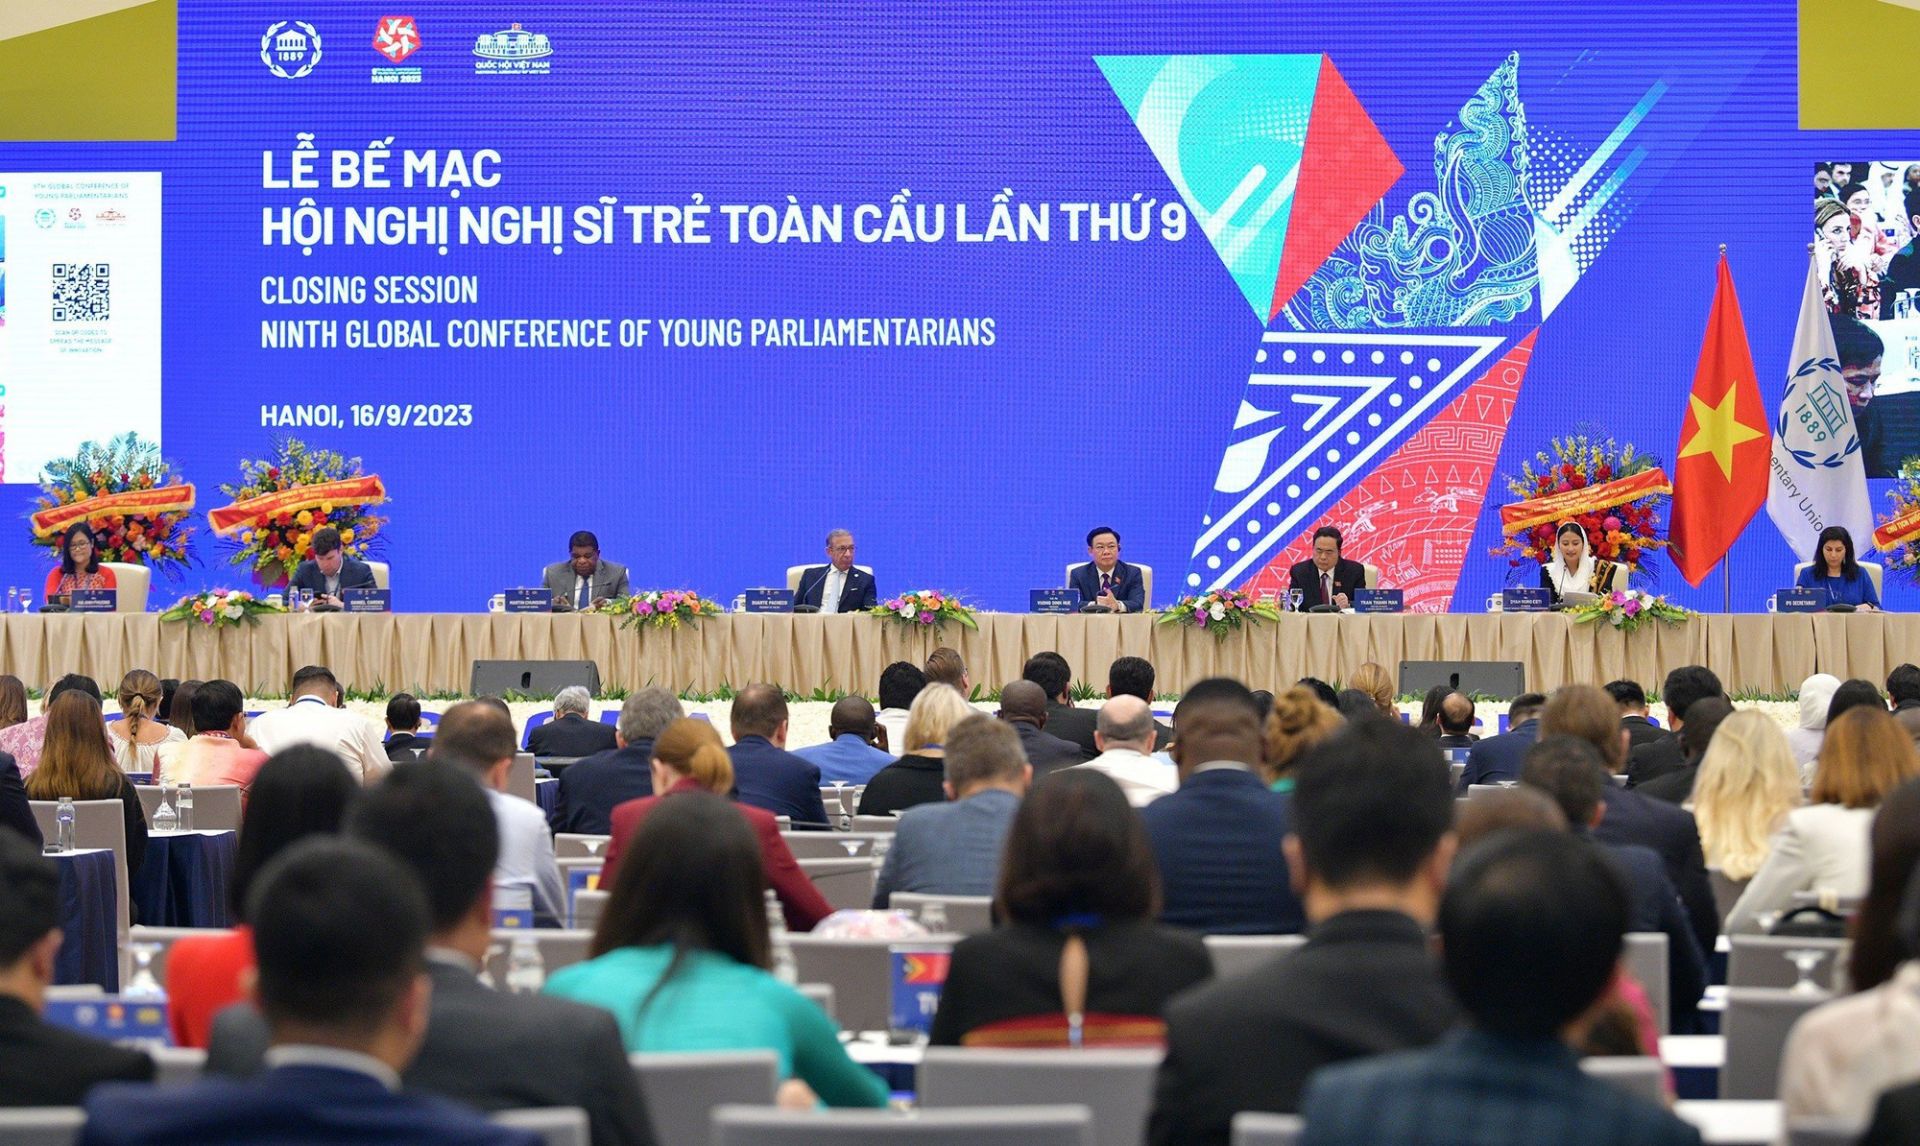 Tuyên bố Hội nghị Nghị sĩ trẻ toàn cầu lần thứ 9 tại Hà Nội - Ảnh 1.